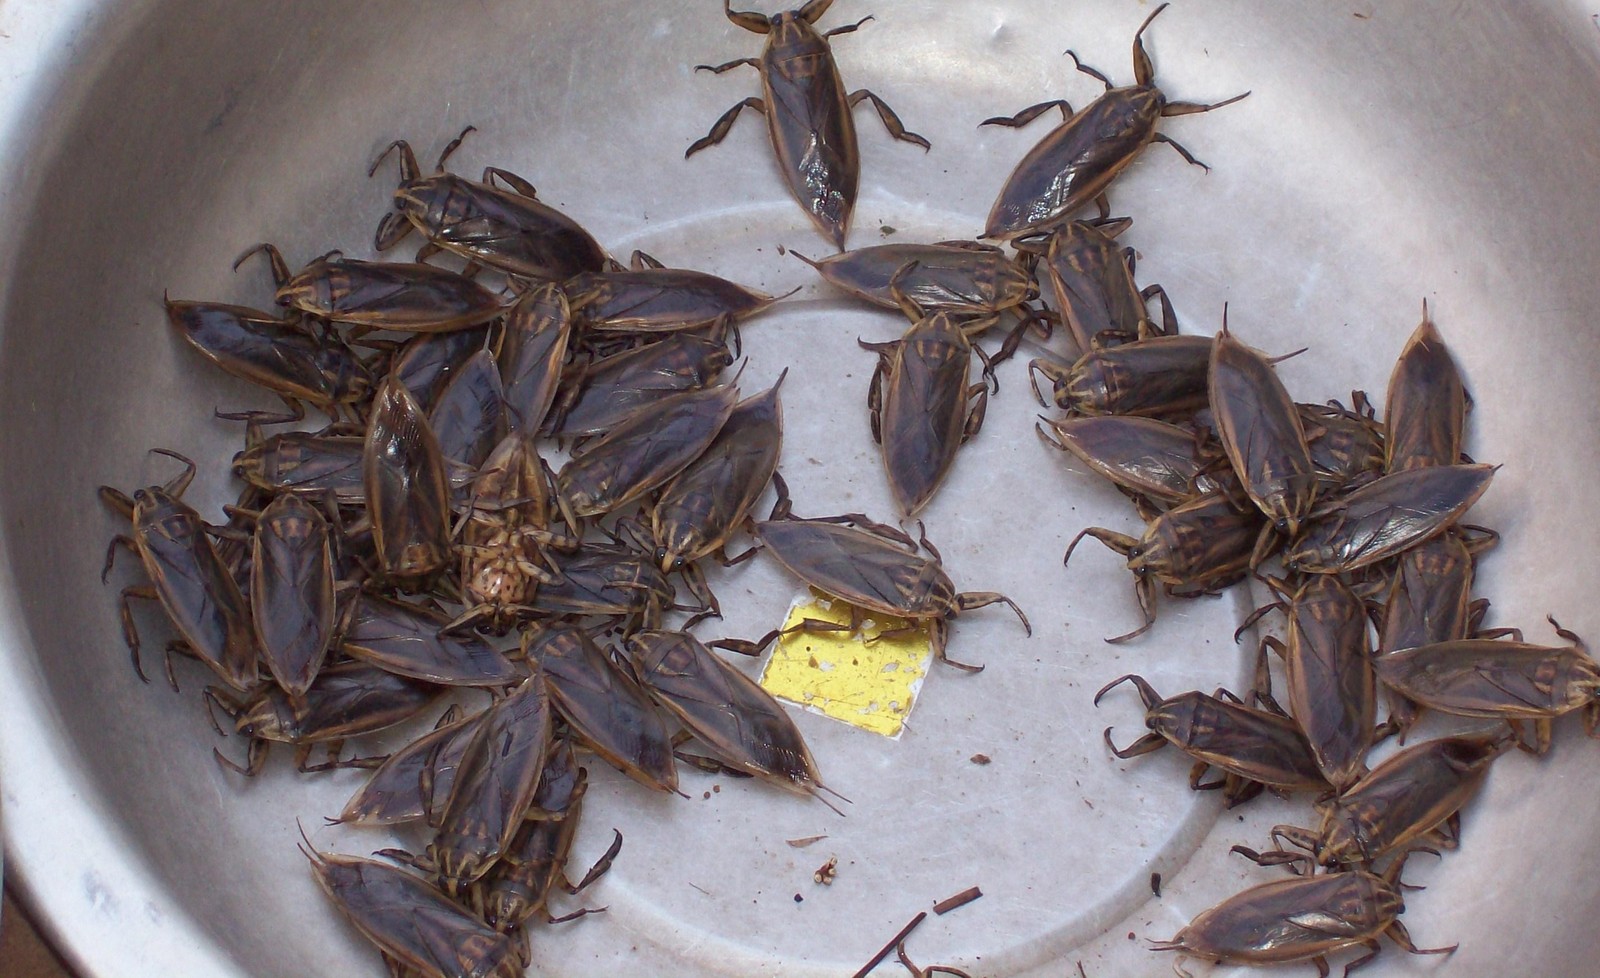 Käfer auf dem Markt von Pakse - Laos